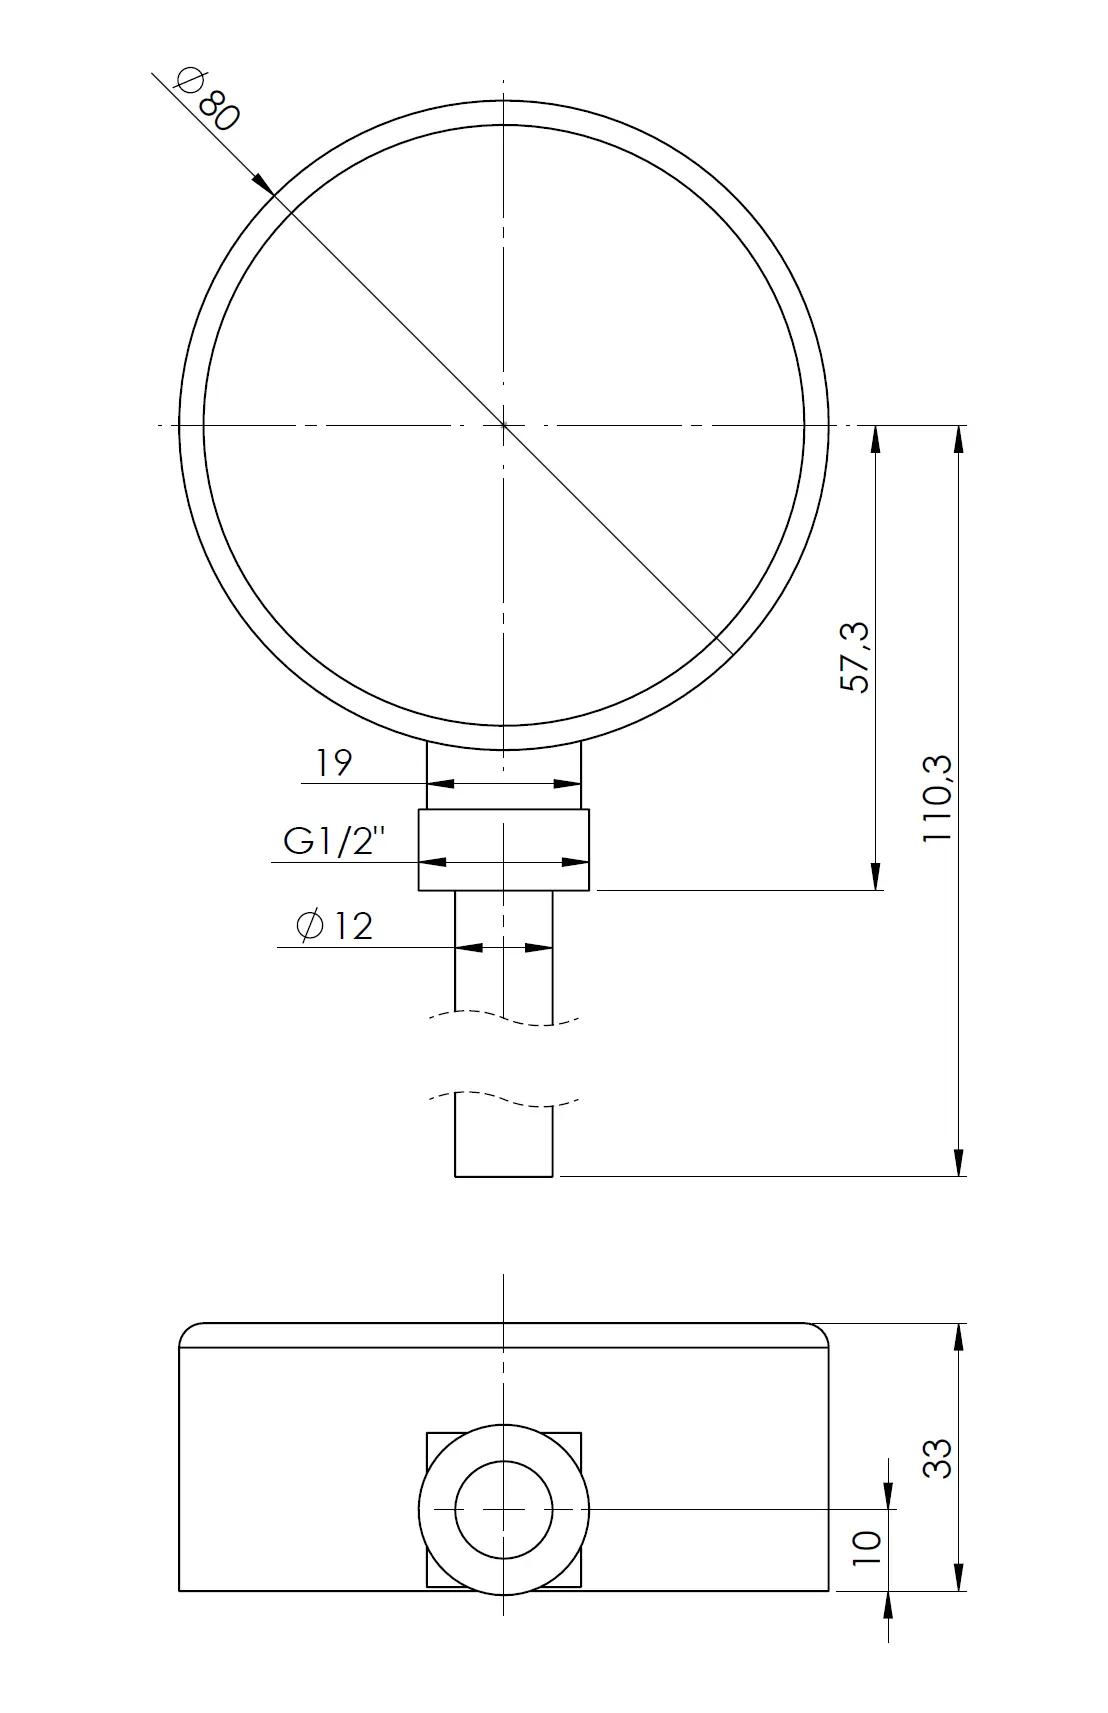 Termometr bimetaliczny BiTh 80, fi80 mm, -20÷60°C, L 63 mm, G1/2", rad, kl. 2 - budowa